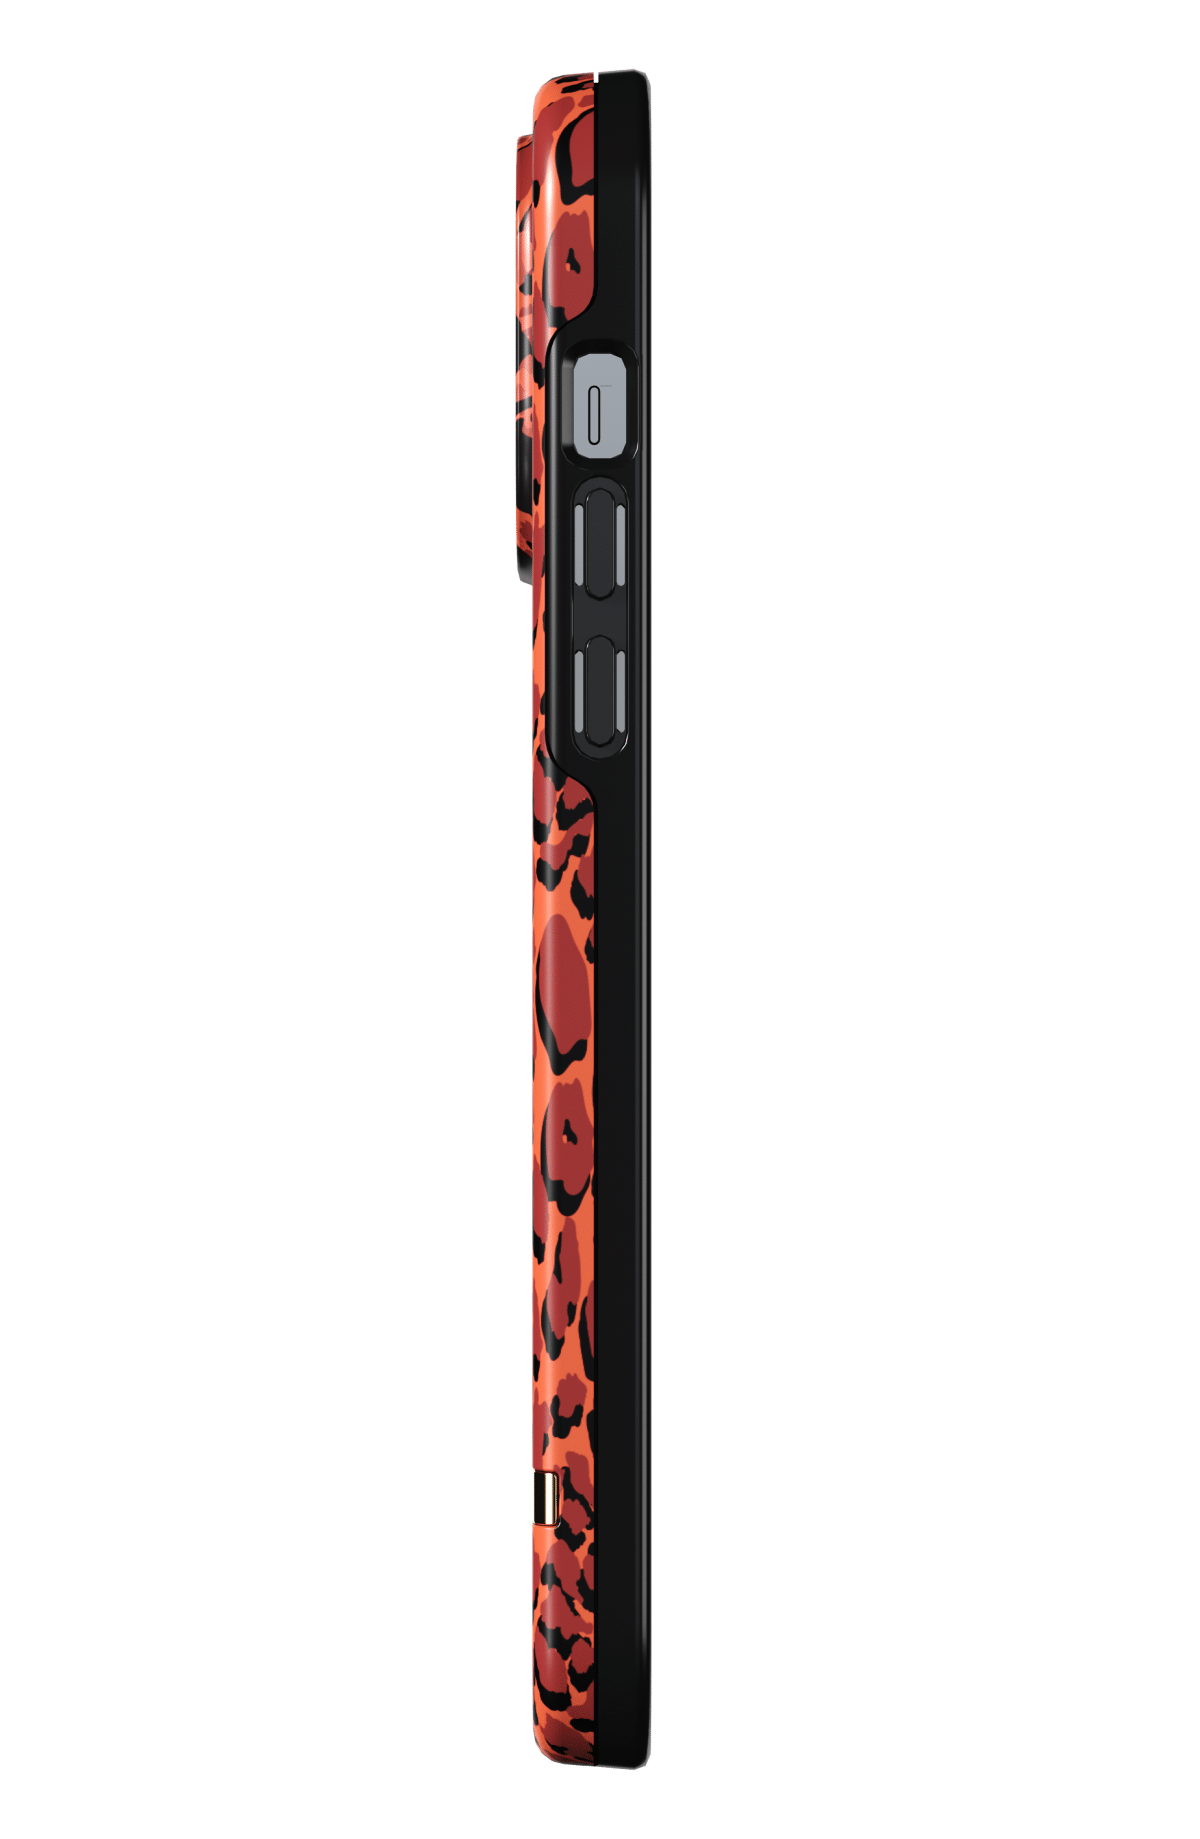 เคส Richmond & Finch - iPhone 13 Pro Max - Amber Cheetah